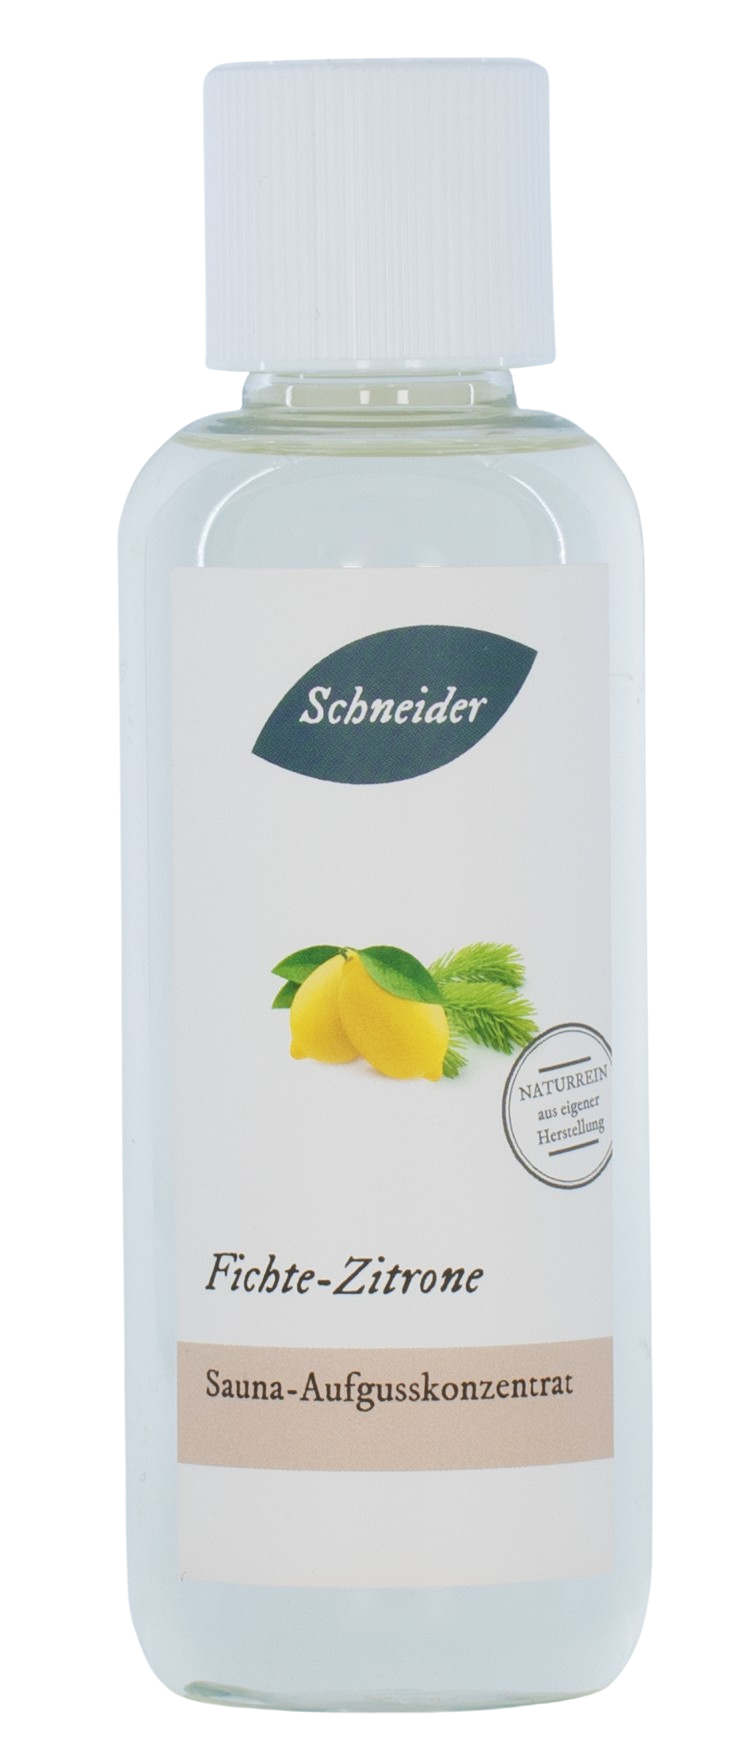 Saunaaufguss Fichte-Zitrone (Aufgusskonzentrat) 250 ml